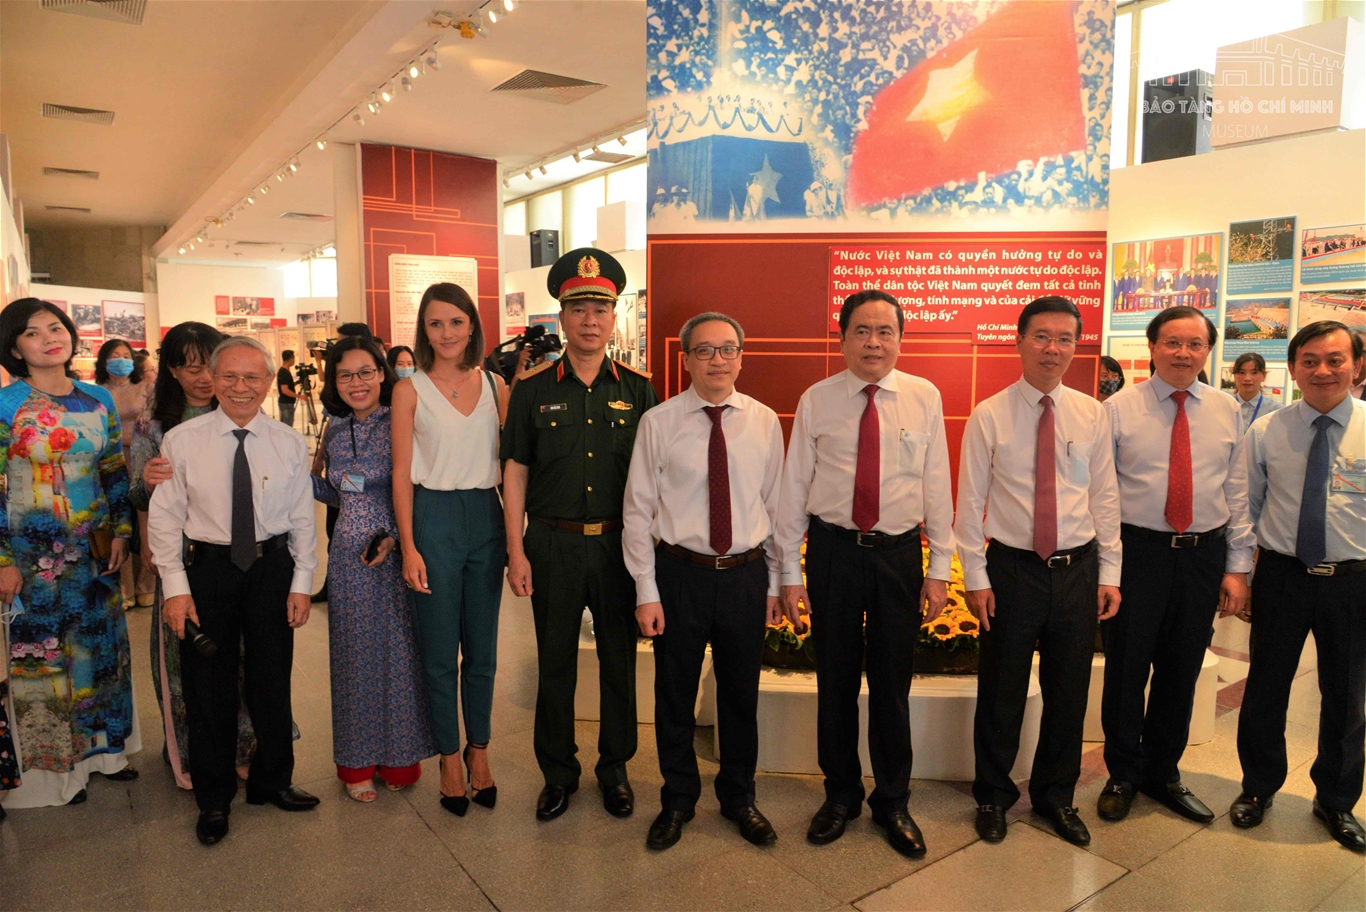 Bảo tàng Hồ Chí Minh khai mạc trưng bày chuyên đề “Việt Nam - Độc lập, Tự cường”